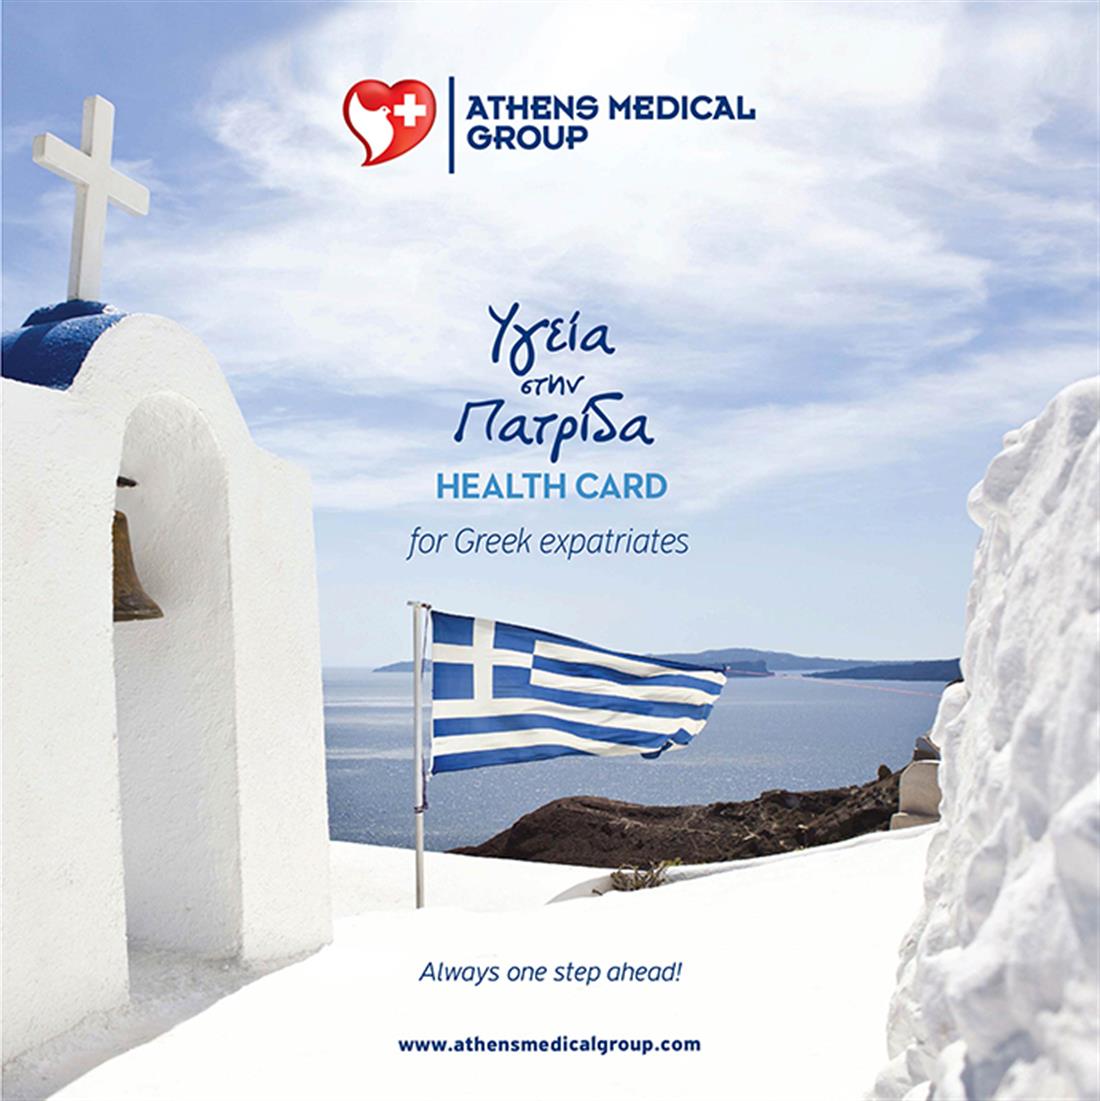 Όμιλος Ιατρικού Αθηνών - Υγεία στην Πατρίδα